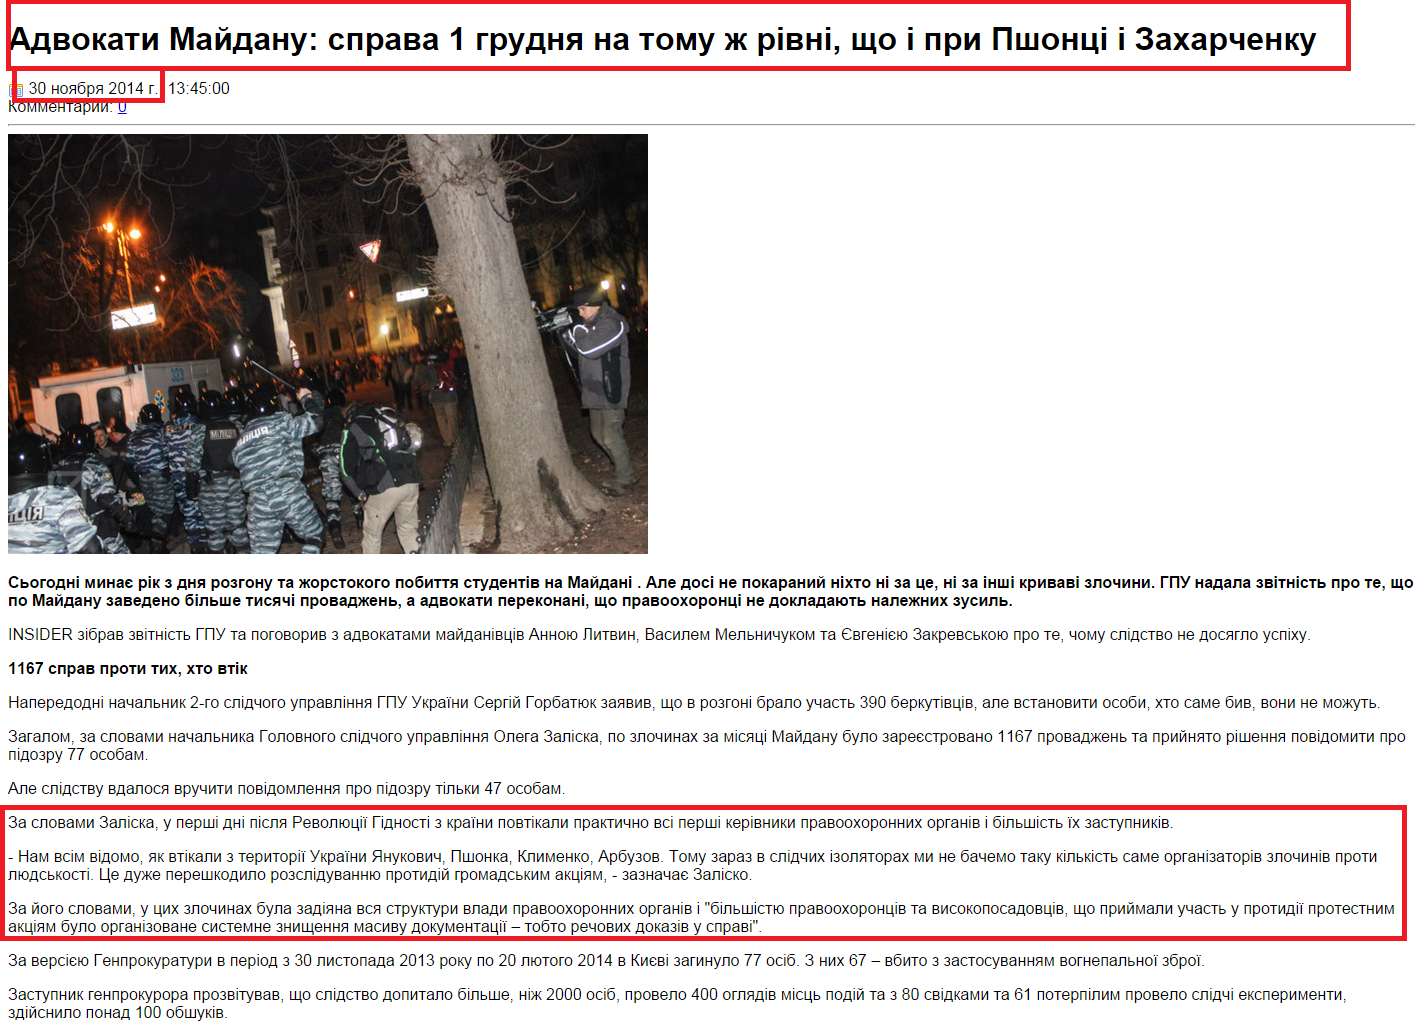 http://antikor.com.ua/articles/20284-advokati_majdanu_sprava_1_grudnja_na_tomu_h_rivni_shcho_i_pri_pshontsi_i_zaharchenku/print